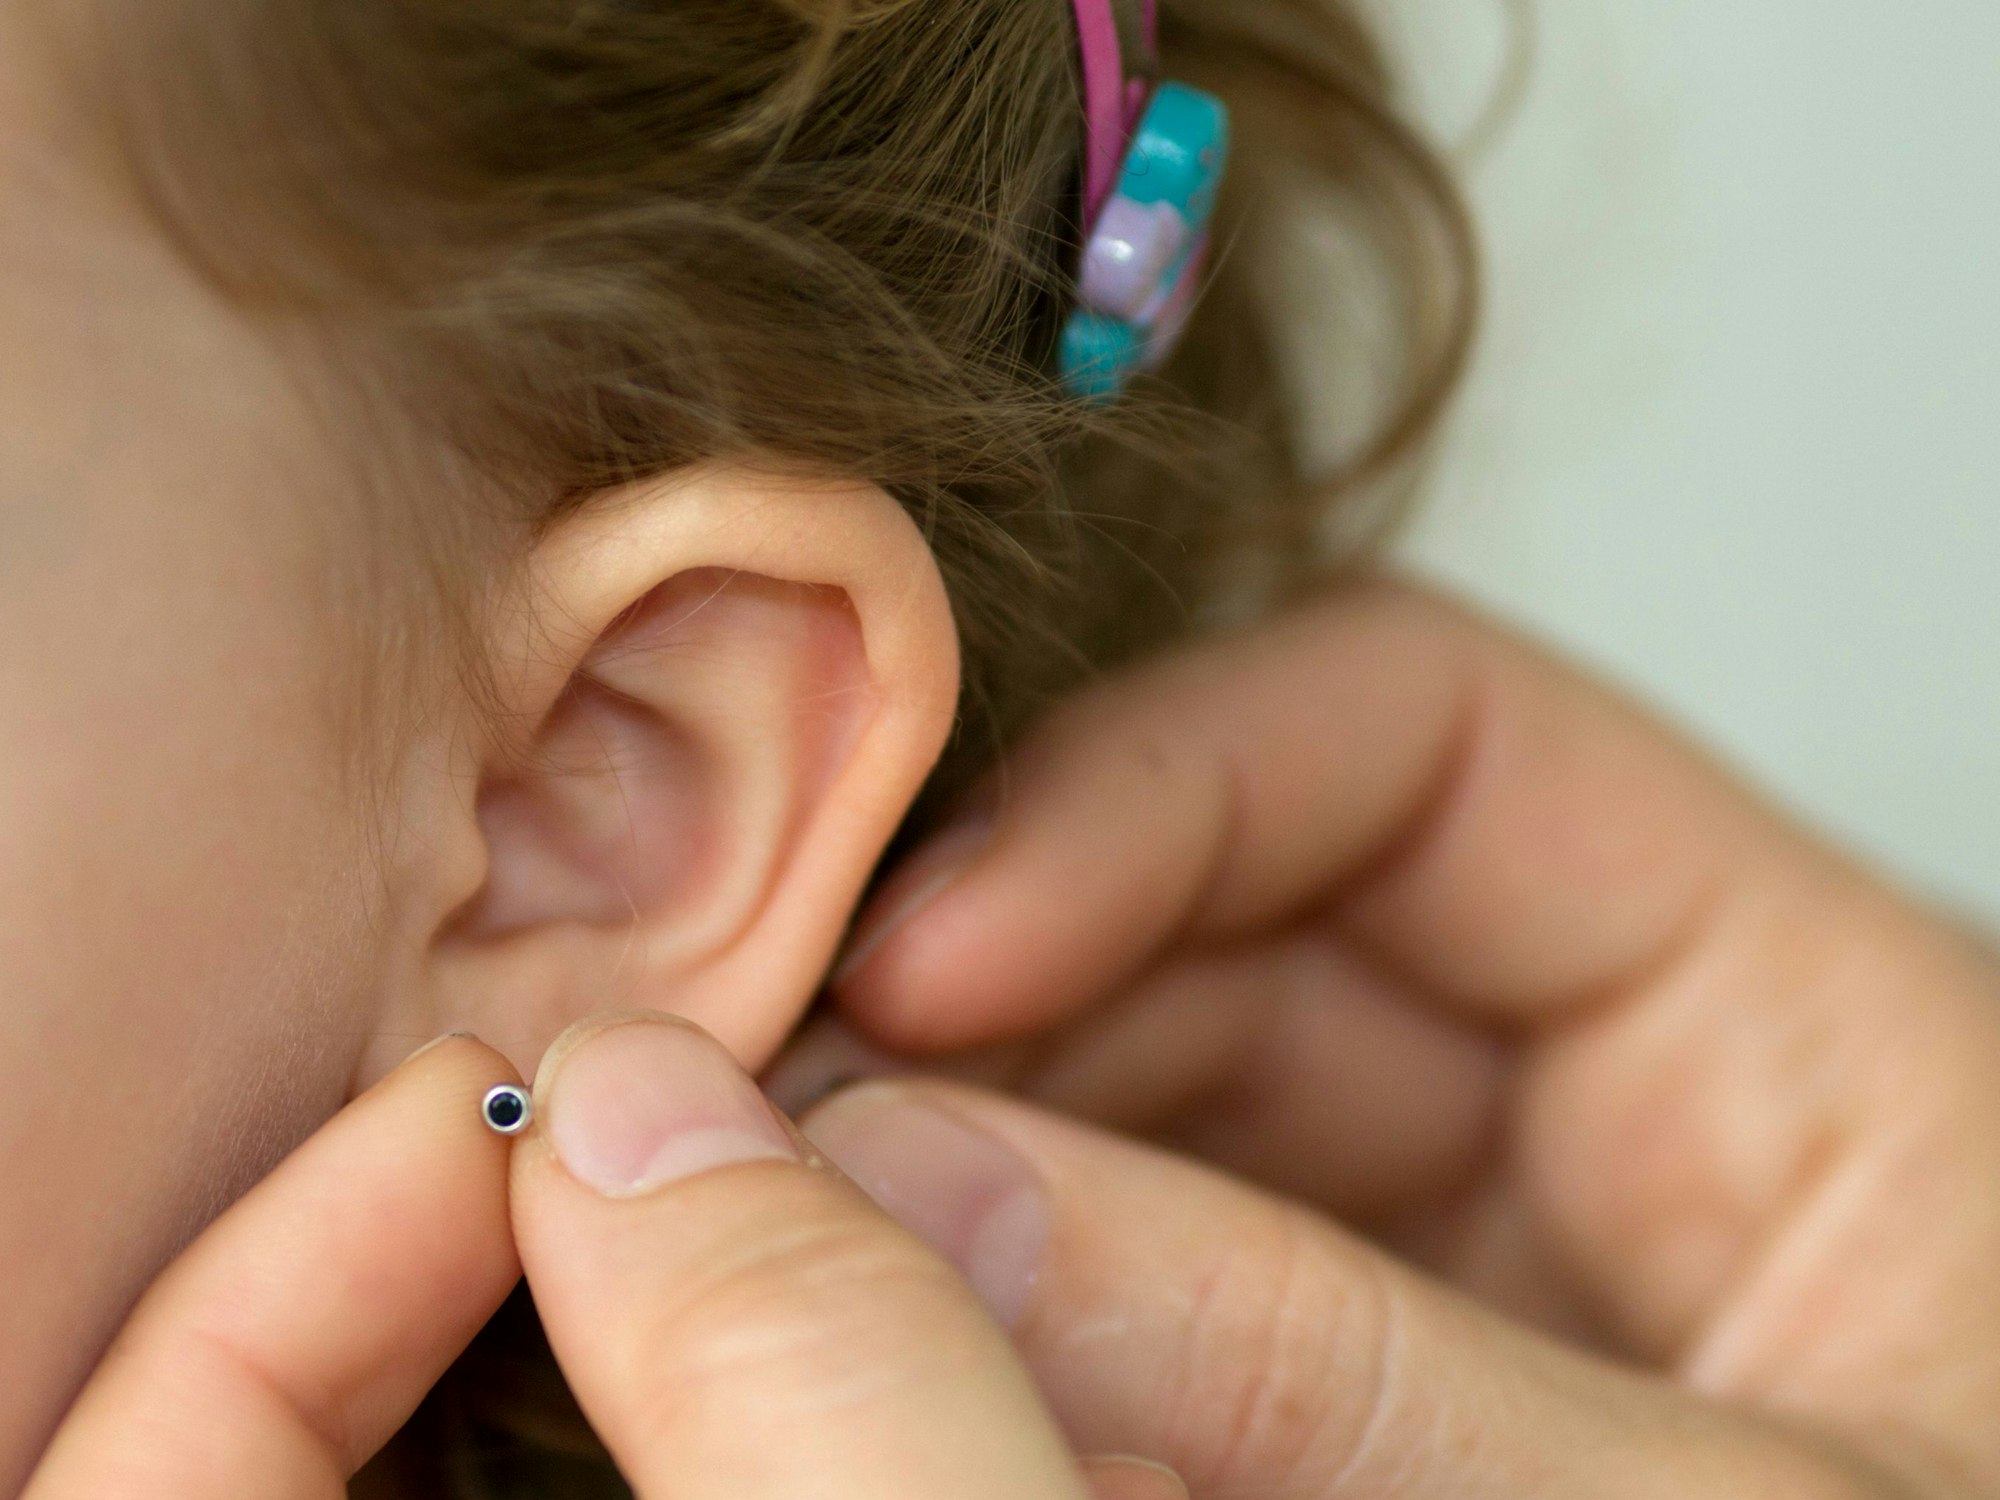 Rückruf von Schmuck: Bei bestimmten Ohrringen ist jetzt Vorsicht geboten. Sie können schlimme allergische Reaktionen auslösen. Unser Symbolbild zeigt Ohrringe bei einem Kind.